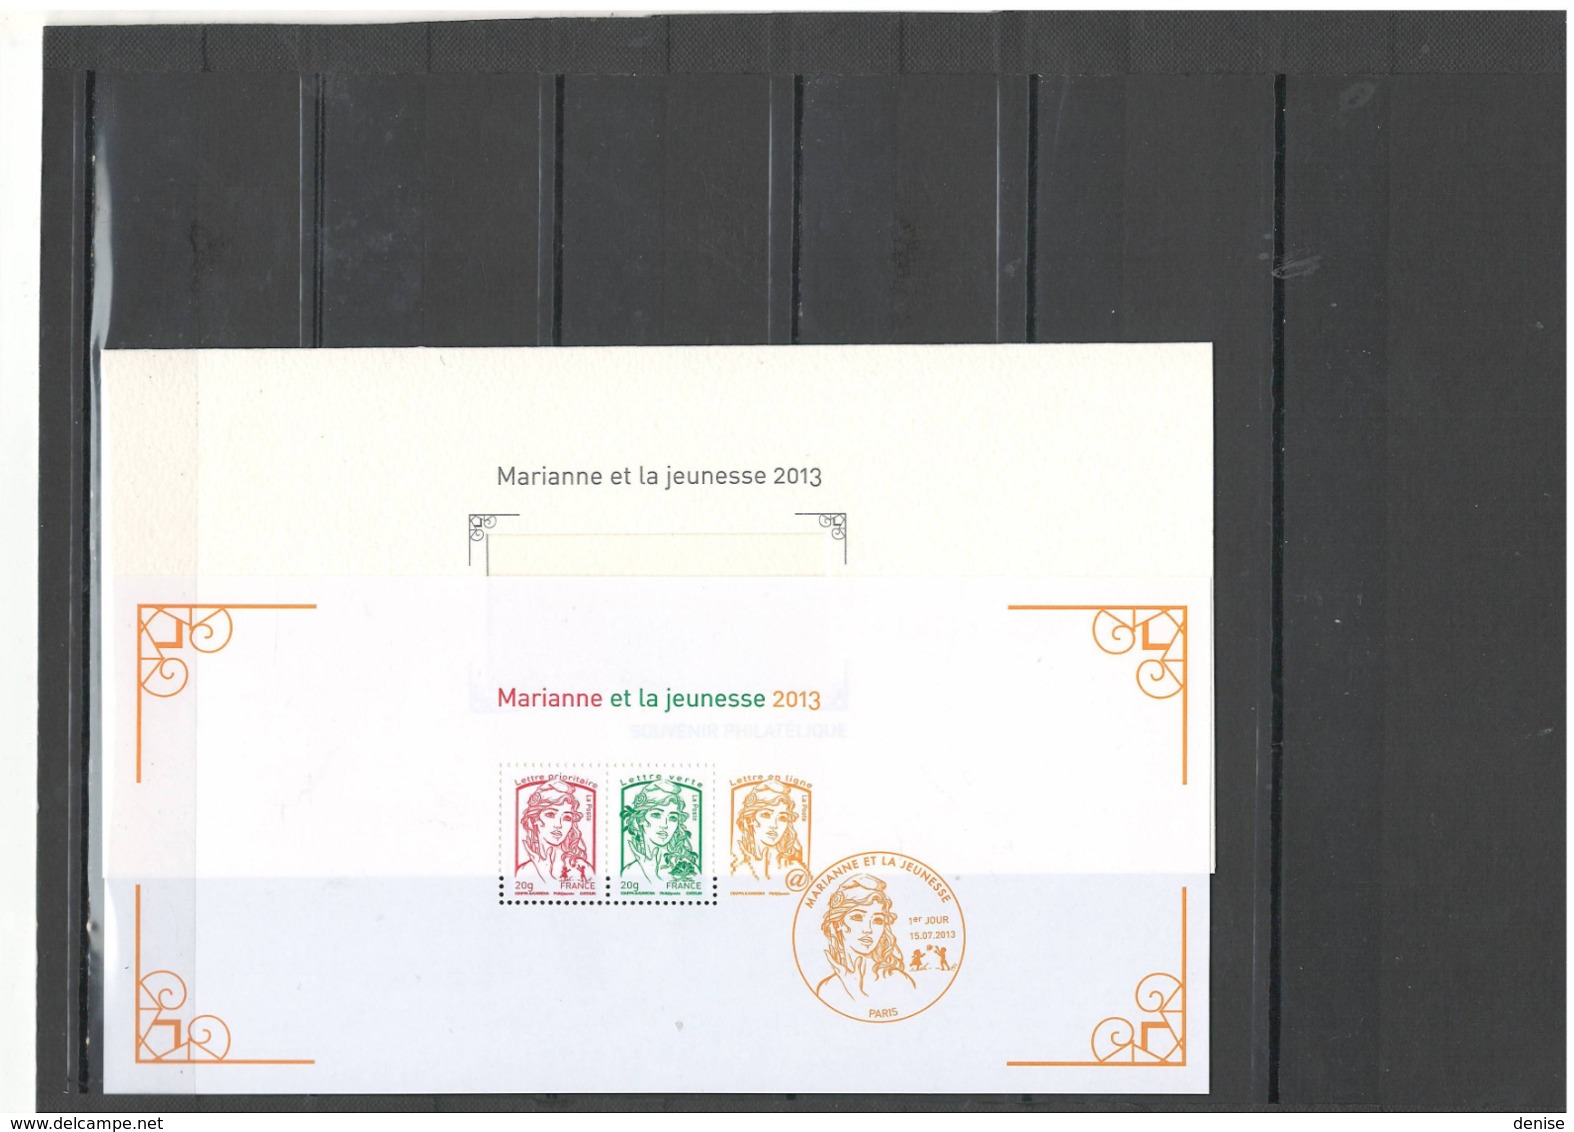 France   Blocs Souvenirs Année 2013 - 2014 - DEPART 1 EURO -24 piéces dans leur dépliant cartonné illustré